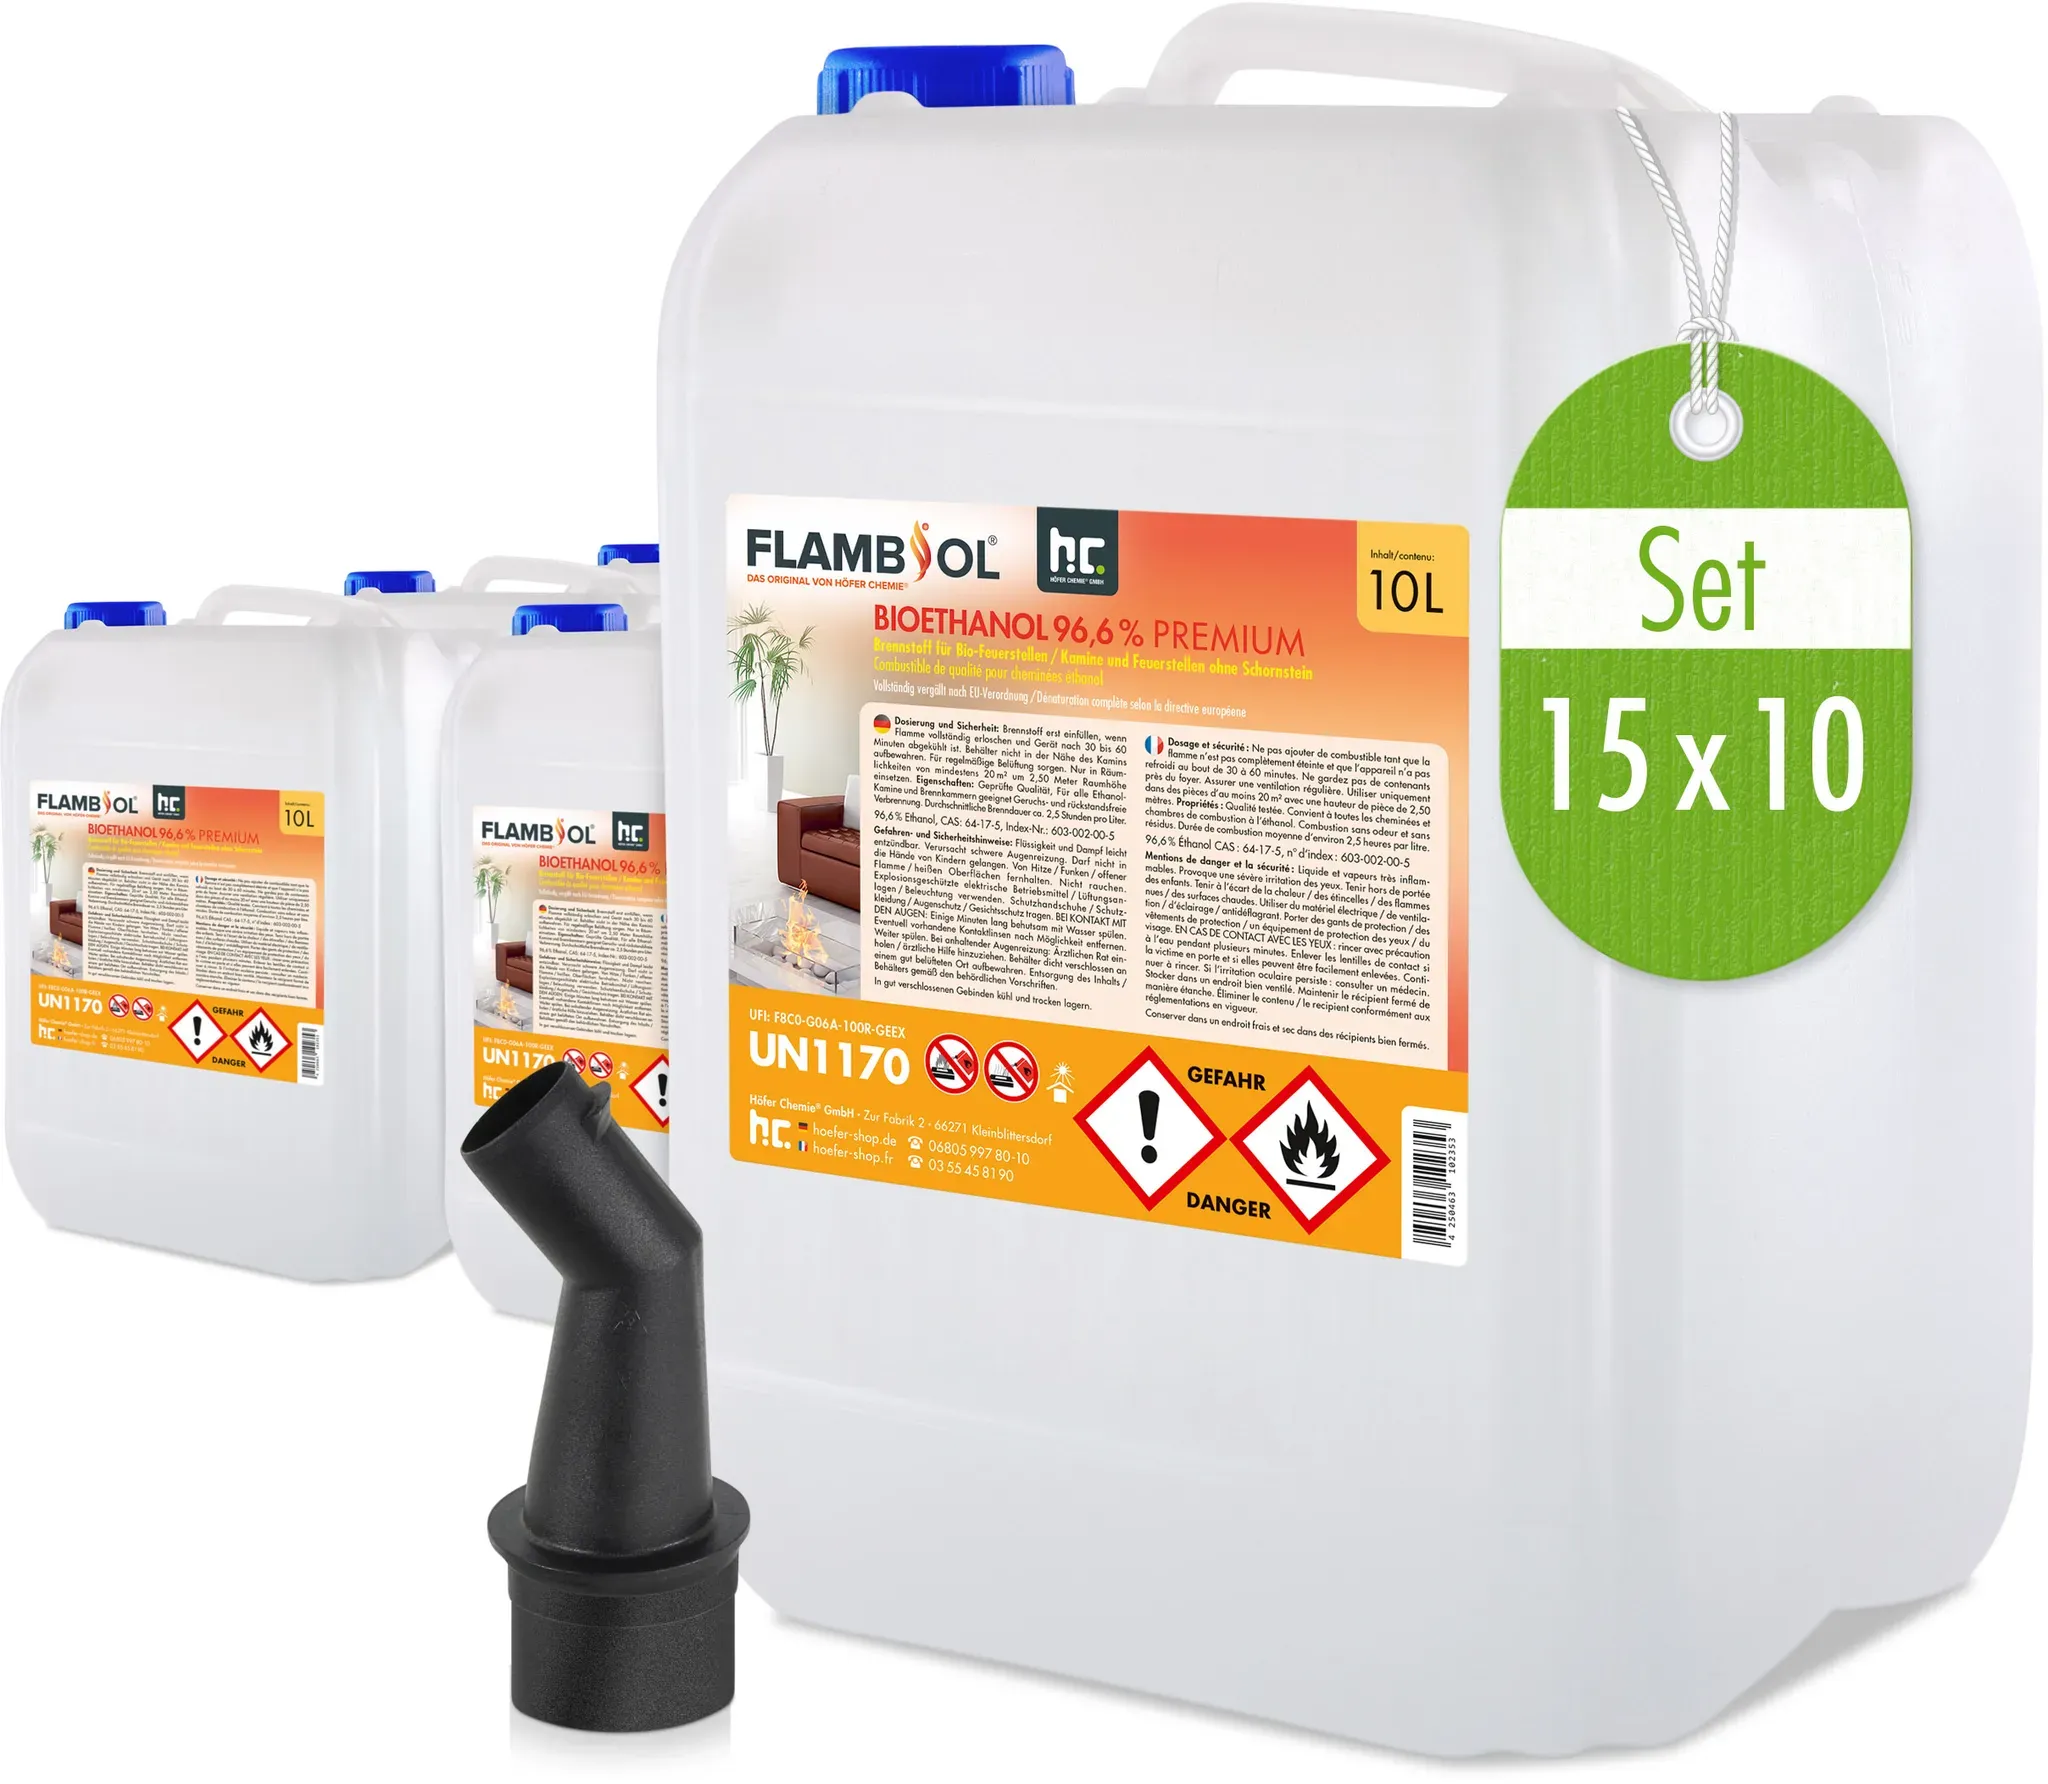 15 x 10 L FLAMBIOL® Bioéthanol 96,6% Premium pour cheminée à éthanol en bidons